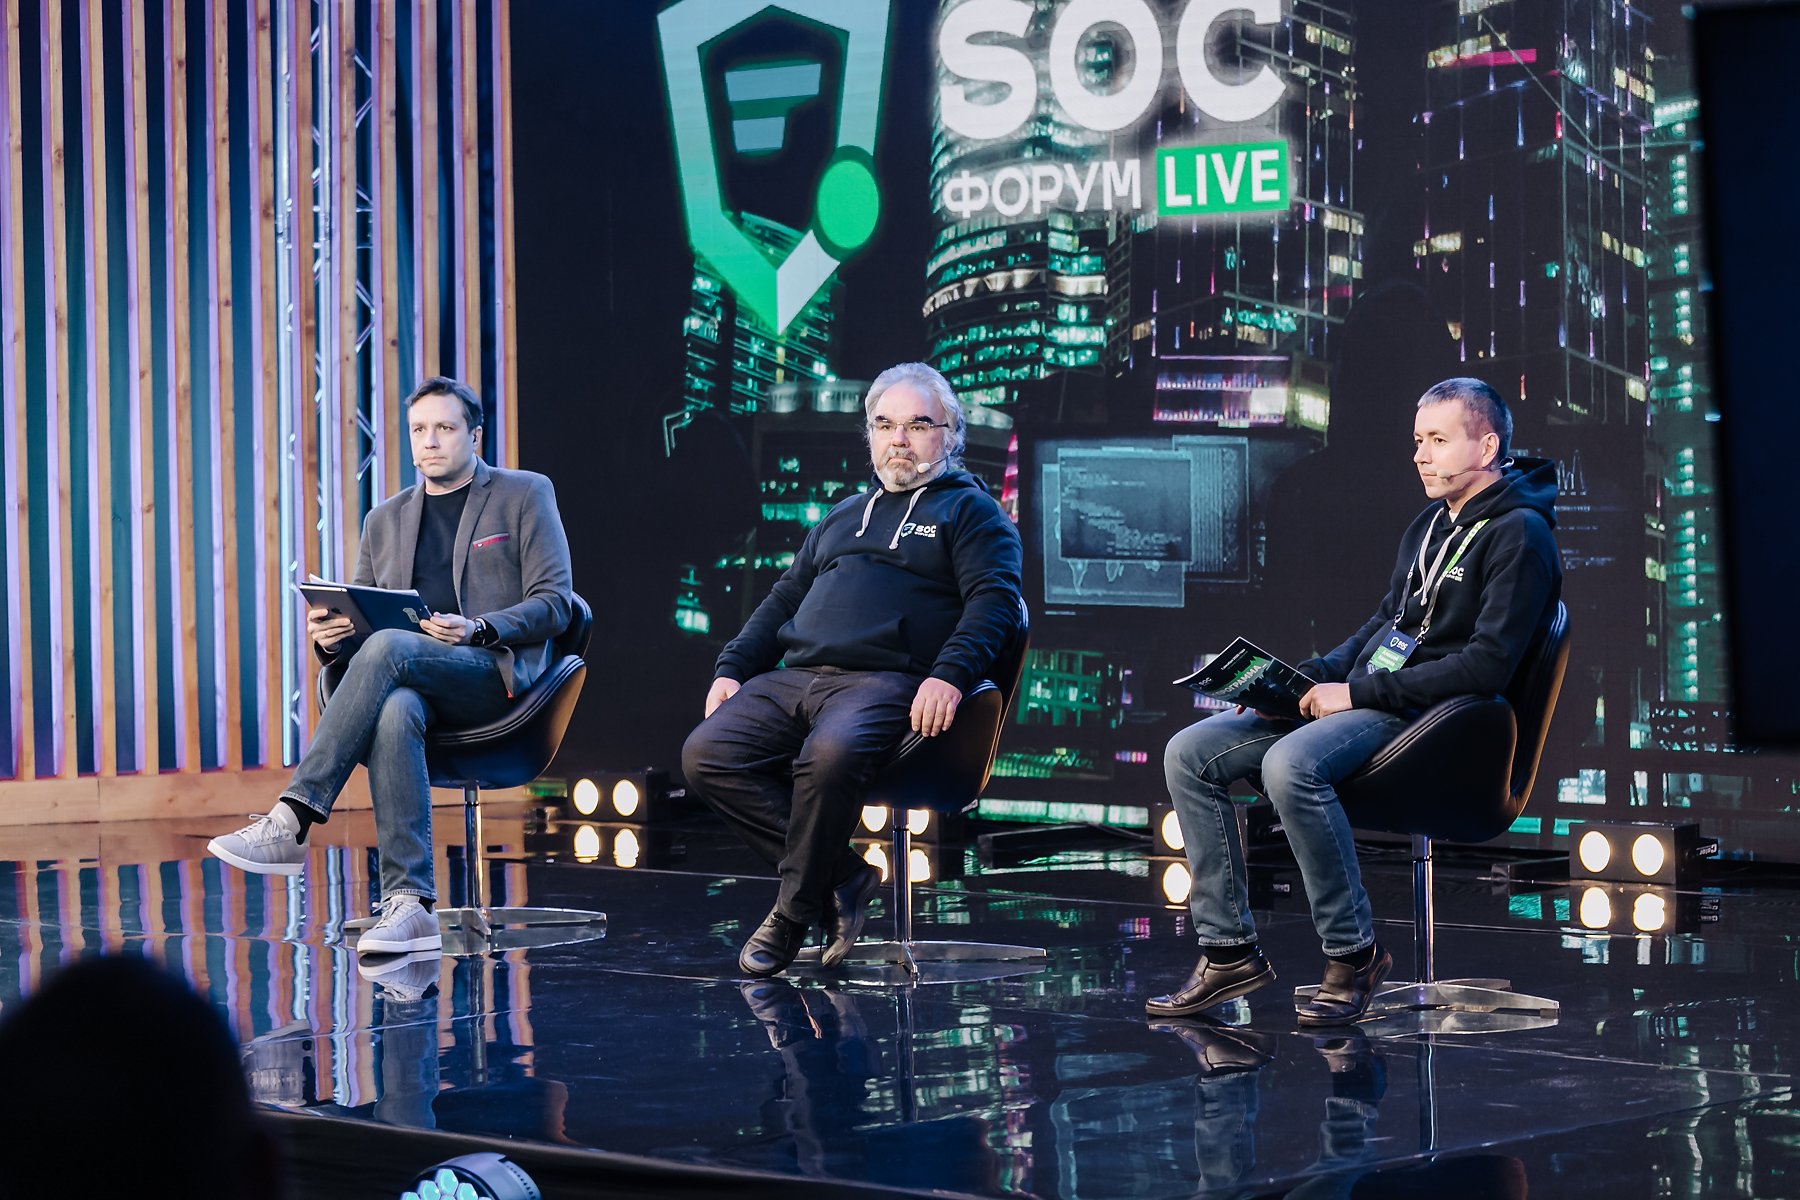 SOC-Форум Live 2020: Дистанцированы, но не сломлены!